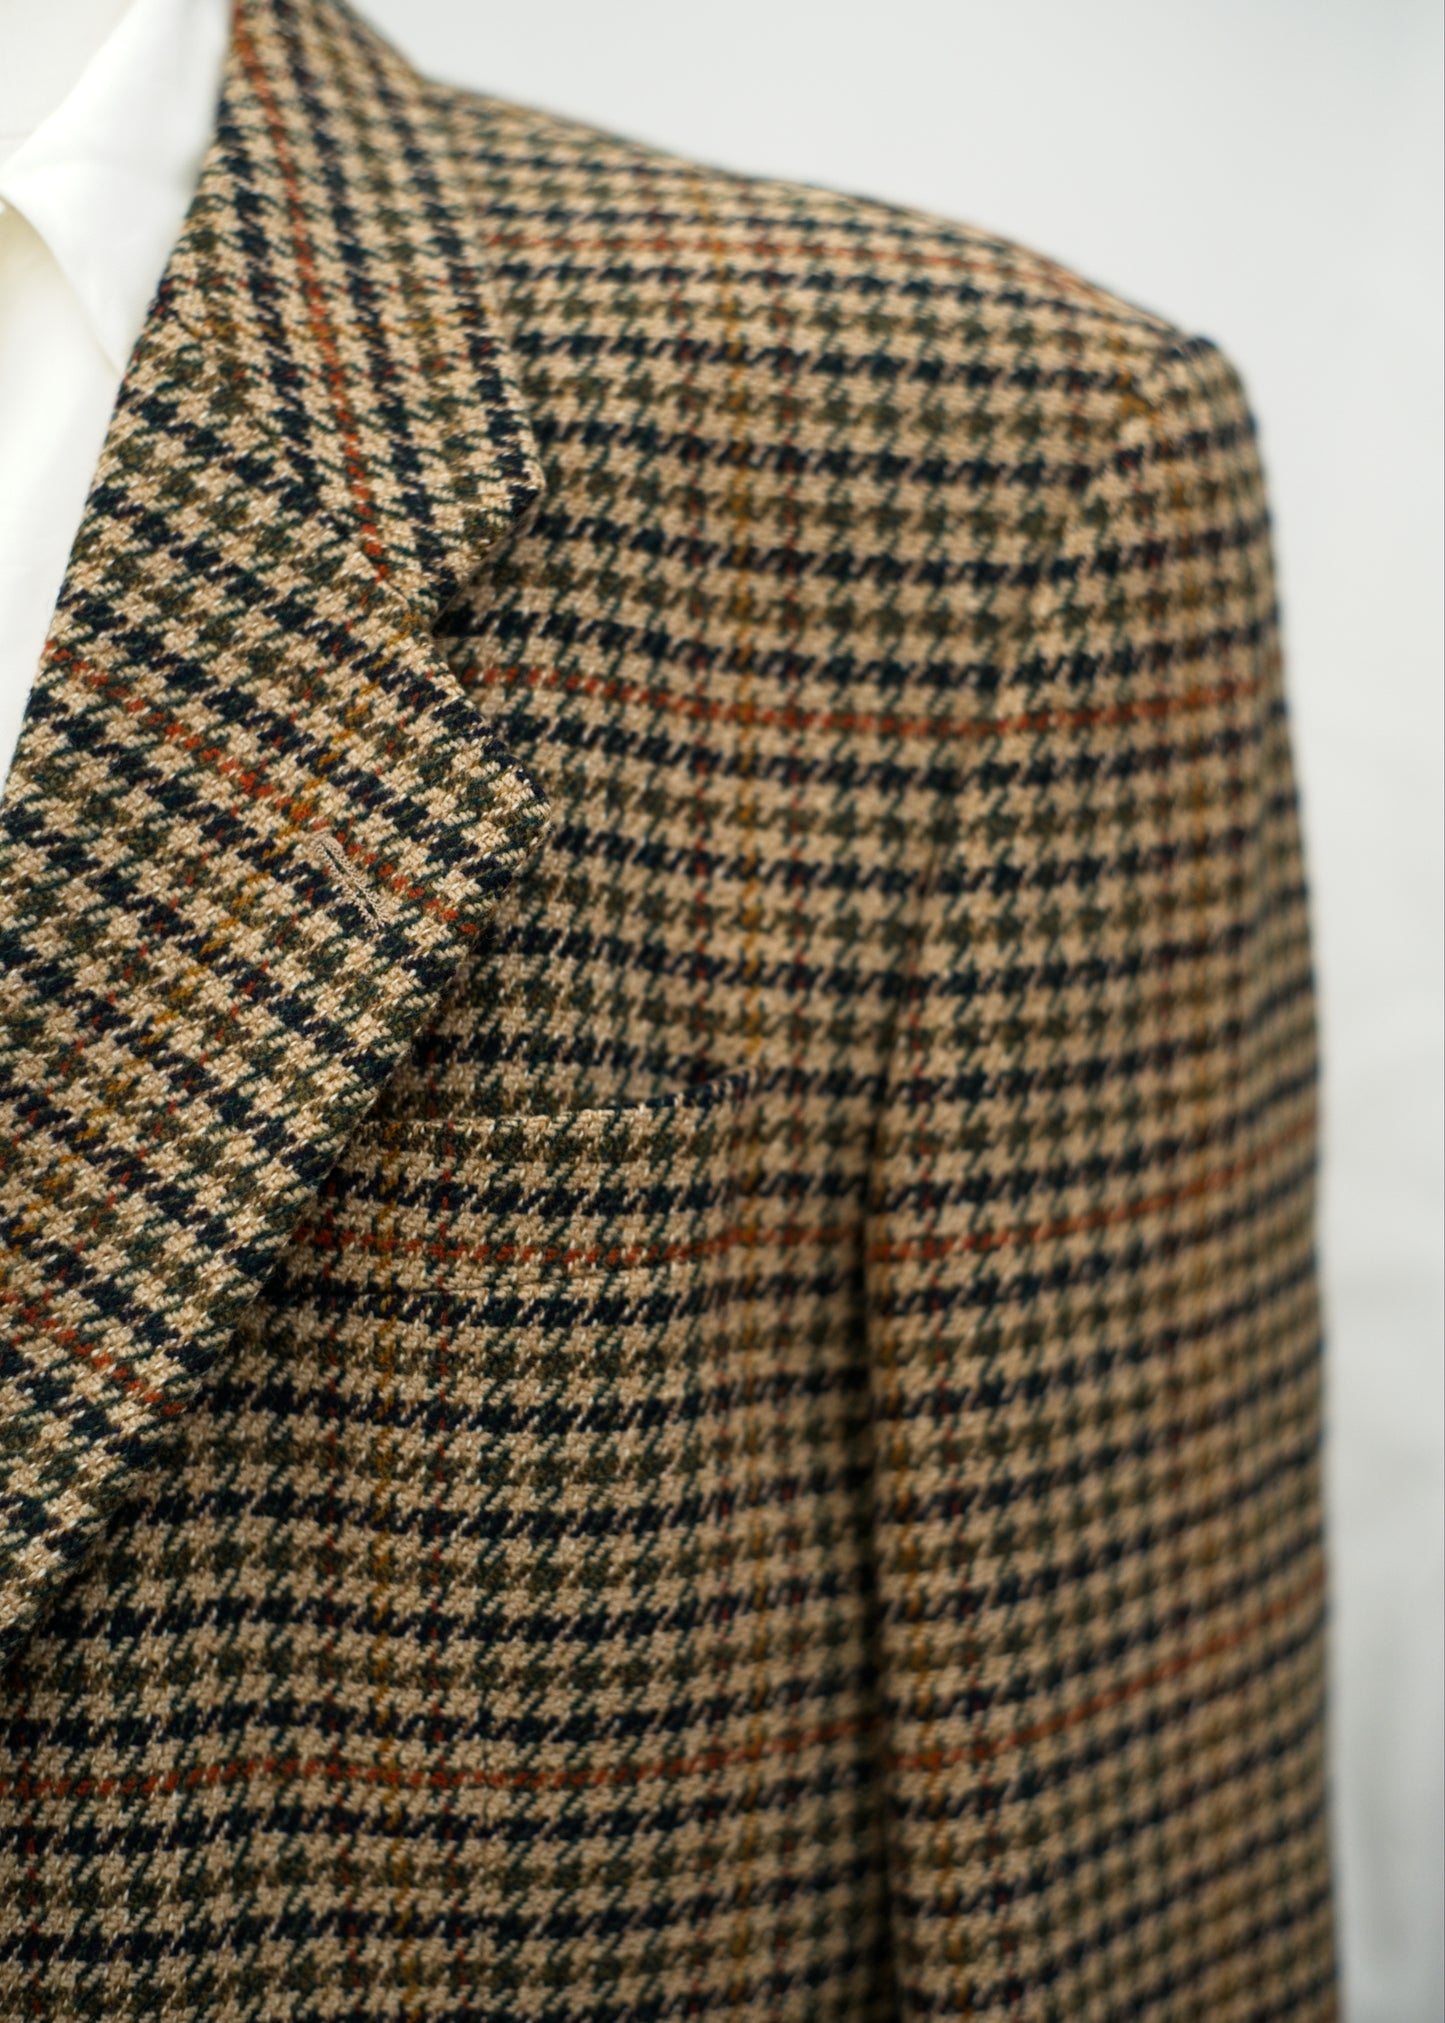 Vintage Tweed Dogtooth Check Jacket • Harvie hudson • 42R